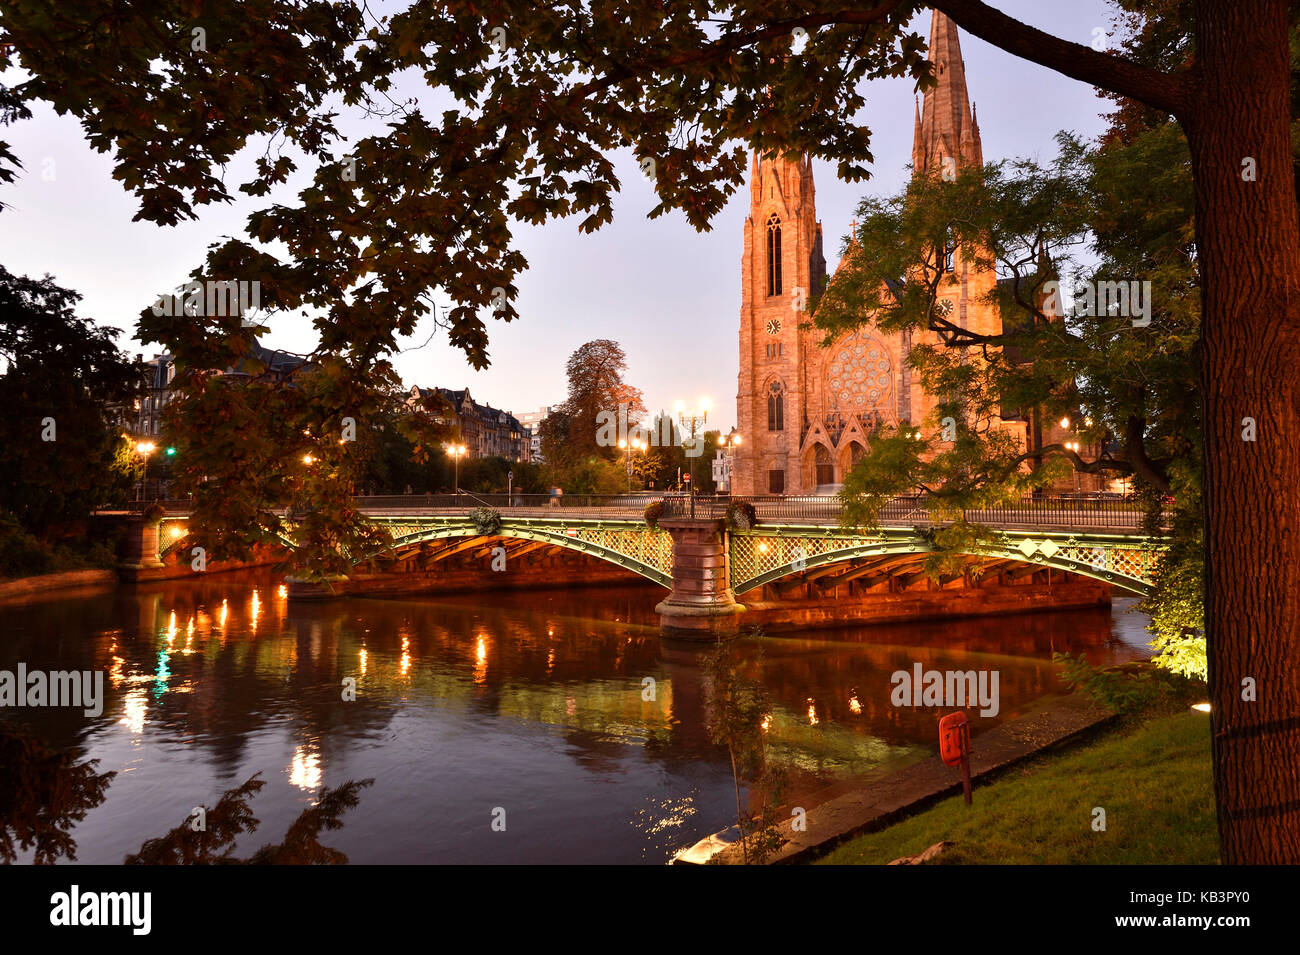 Frankreich, Bas Rhin, Straßburg, Altstadt als Weltkulturerbe von der unesco, St Paul Kirche und Auvergne Brücke über den Fluss aufgeführten krank Stockfoto